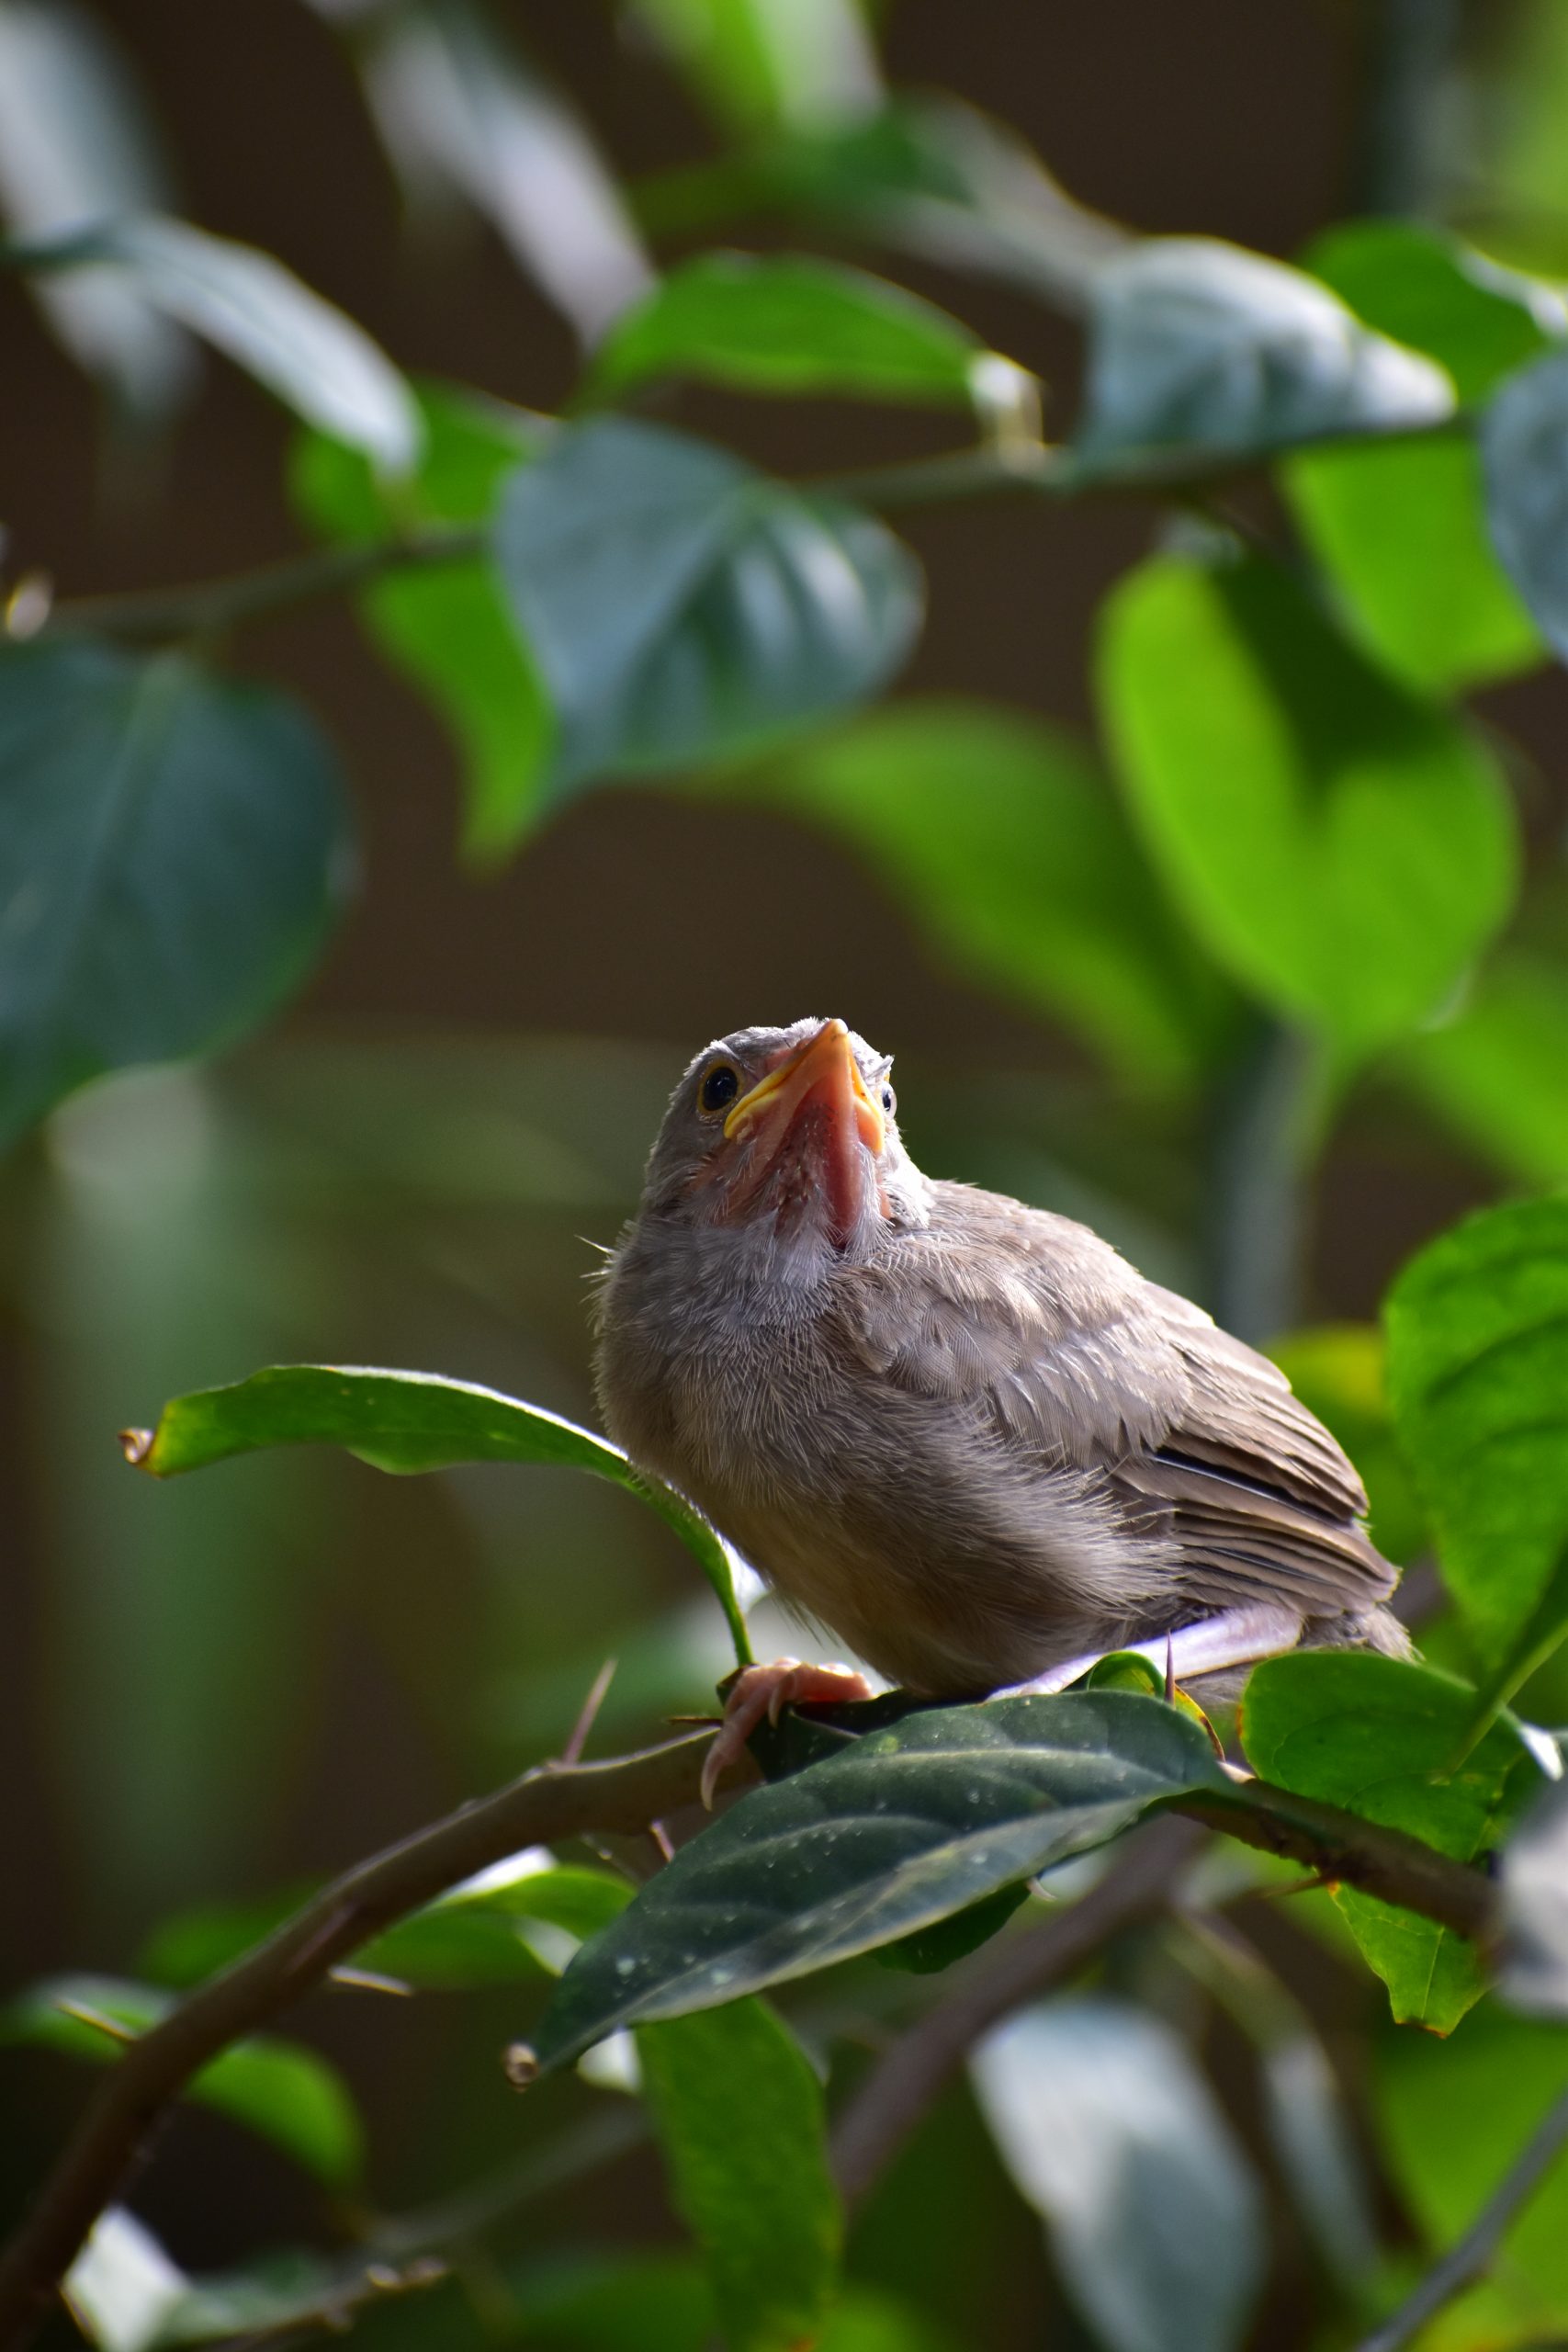 Jungle babbler bird on a plant